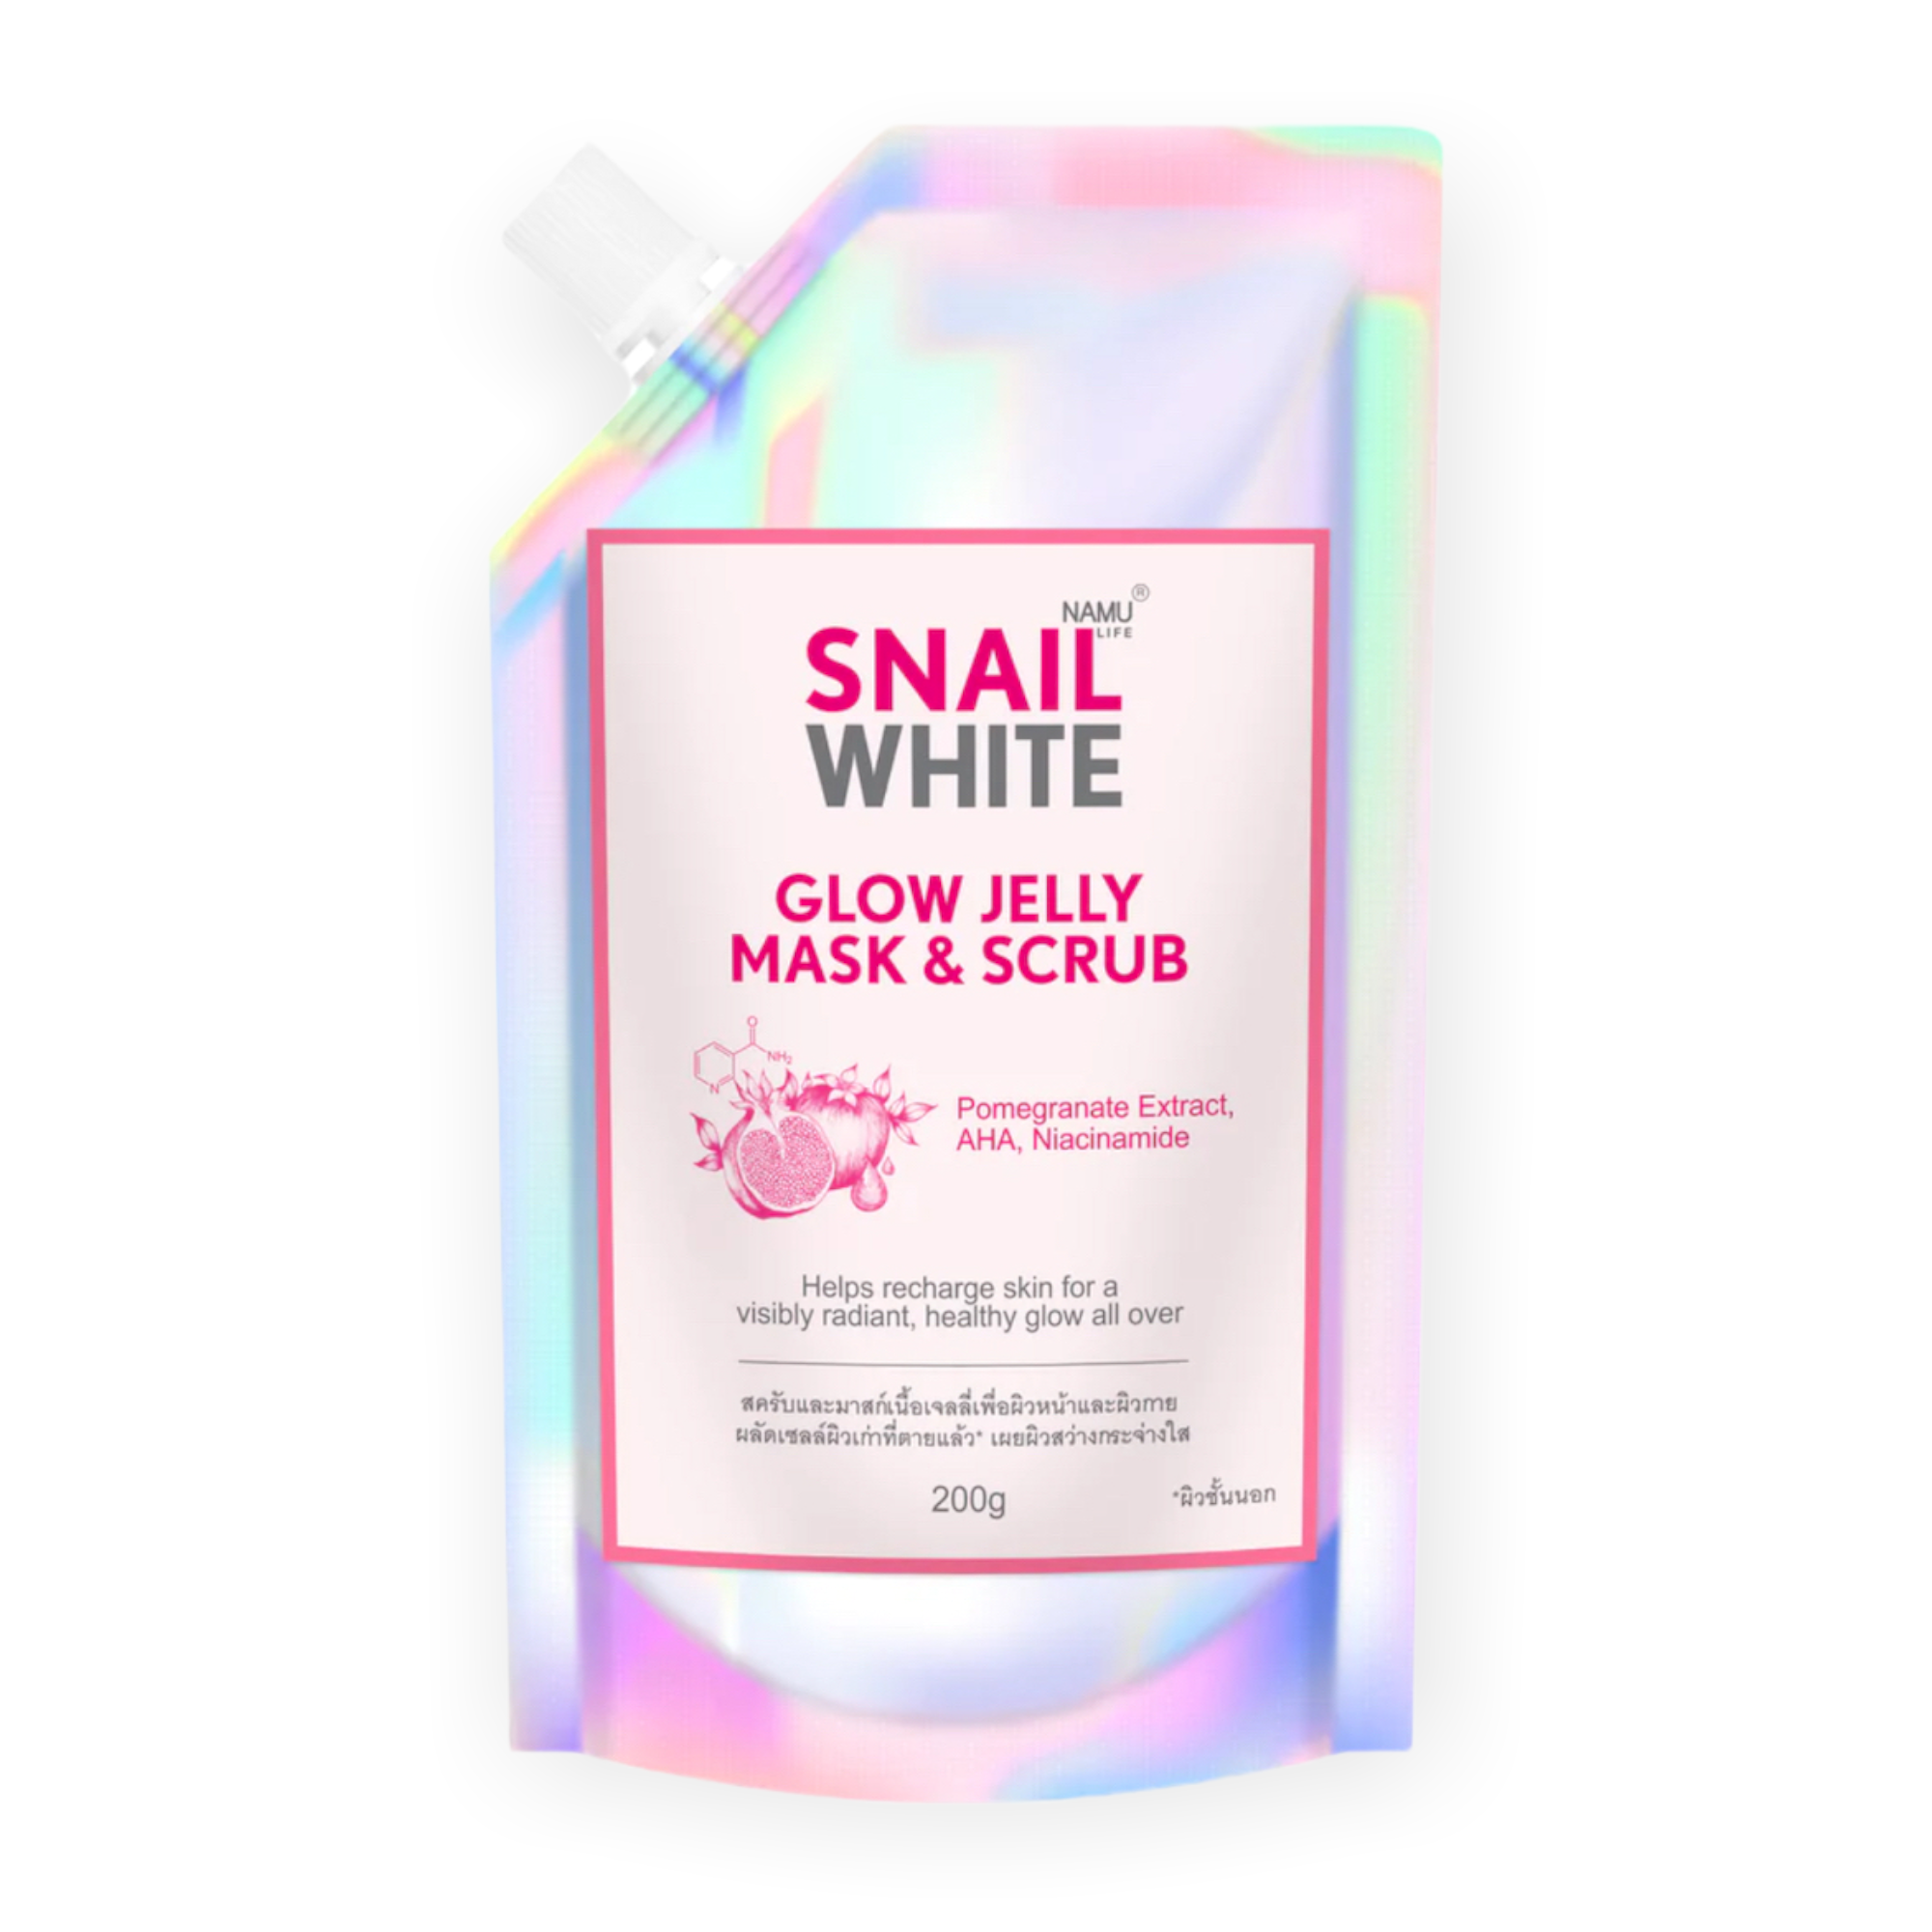 Snailwhite Glow Jelly Mask & Scrub 200g